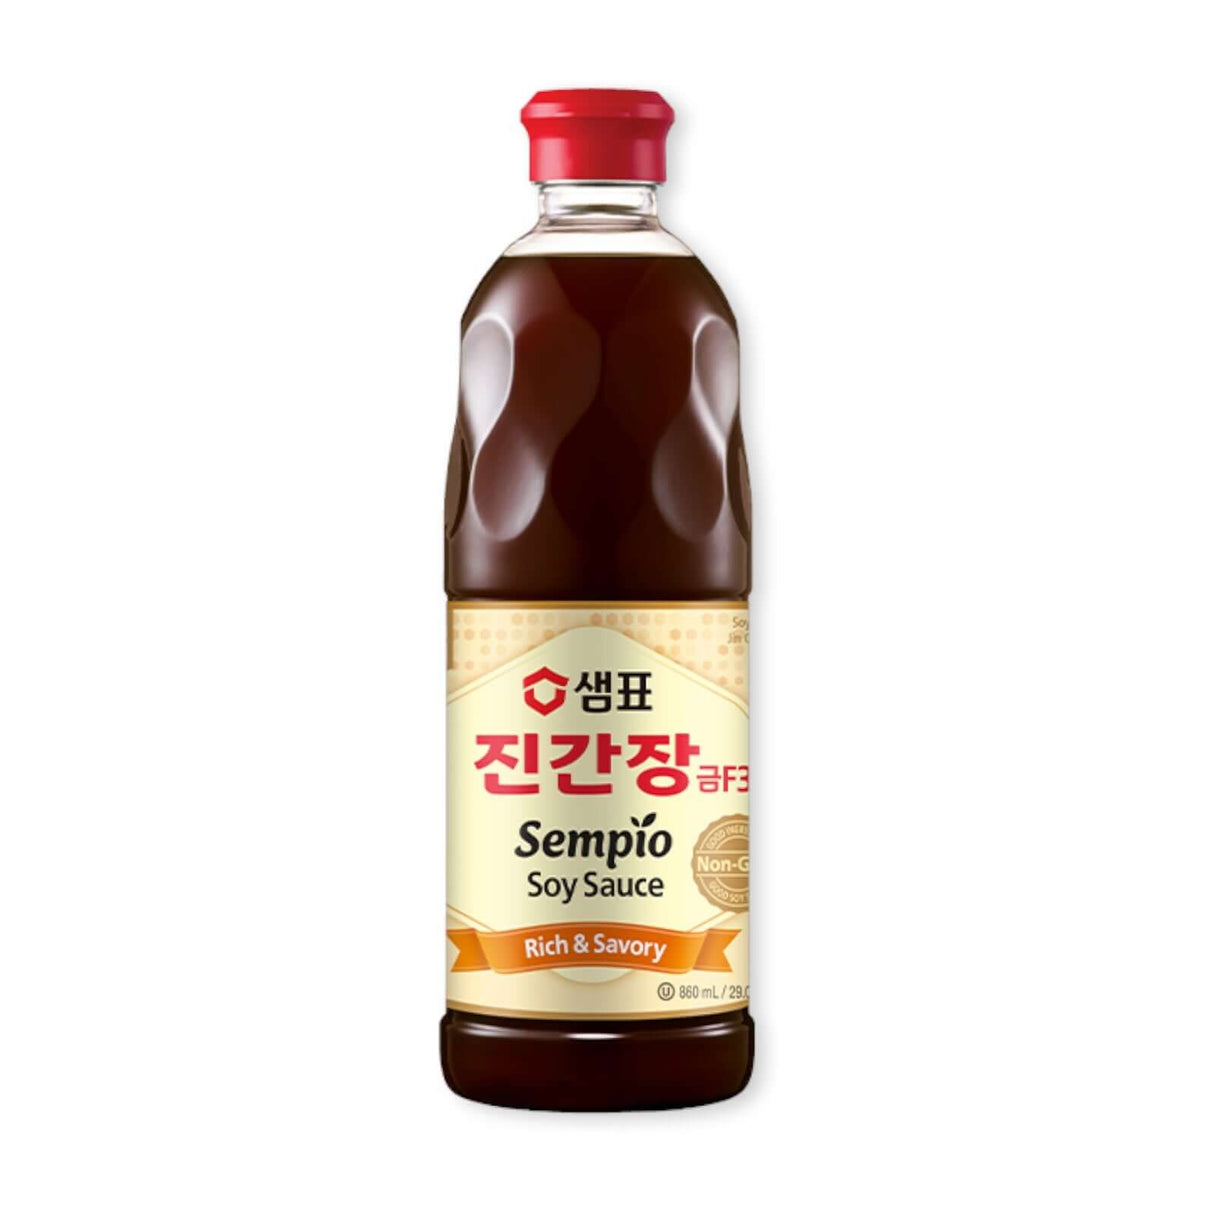 Sempio Soy Sauce Jin Gold F3 (Rich & Savory)